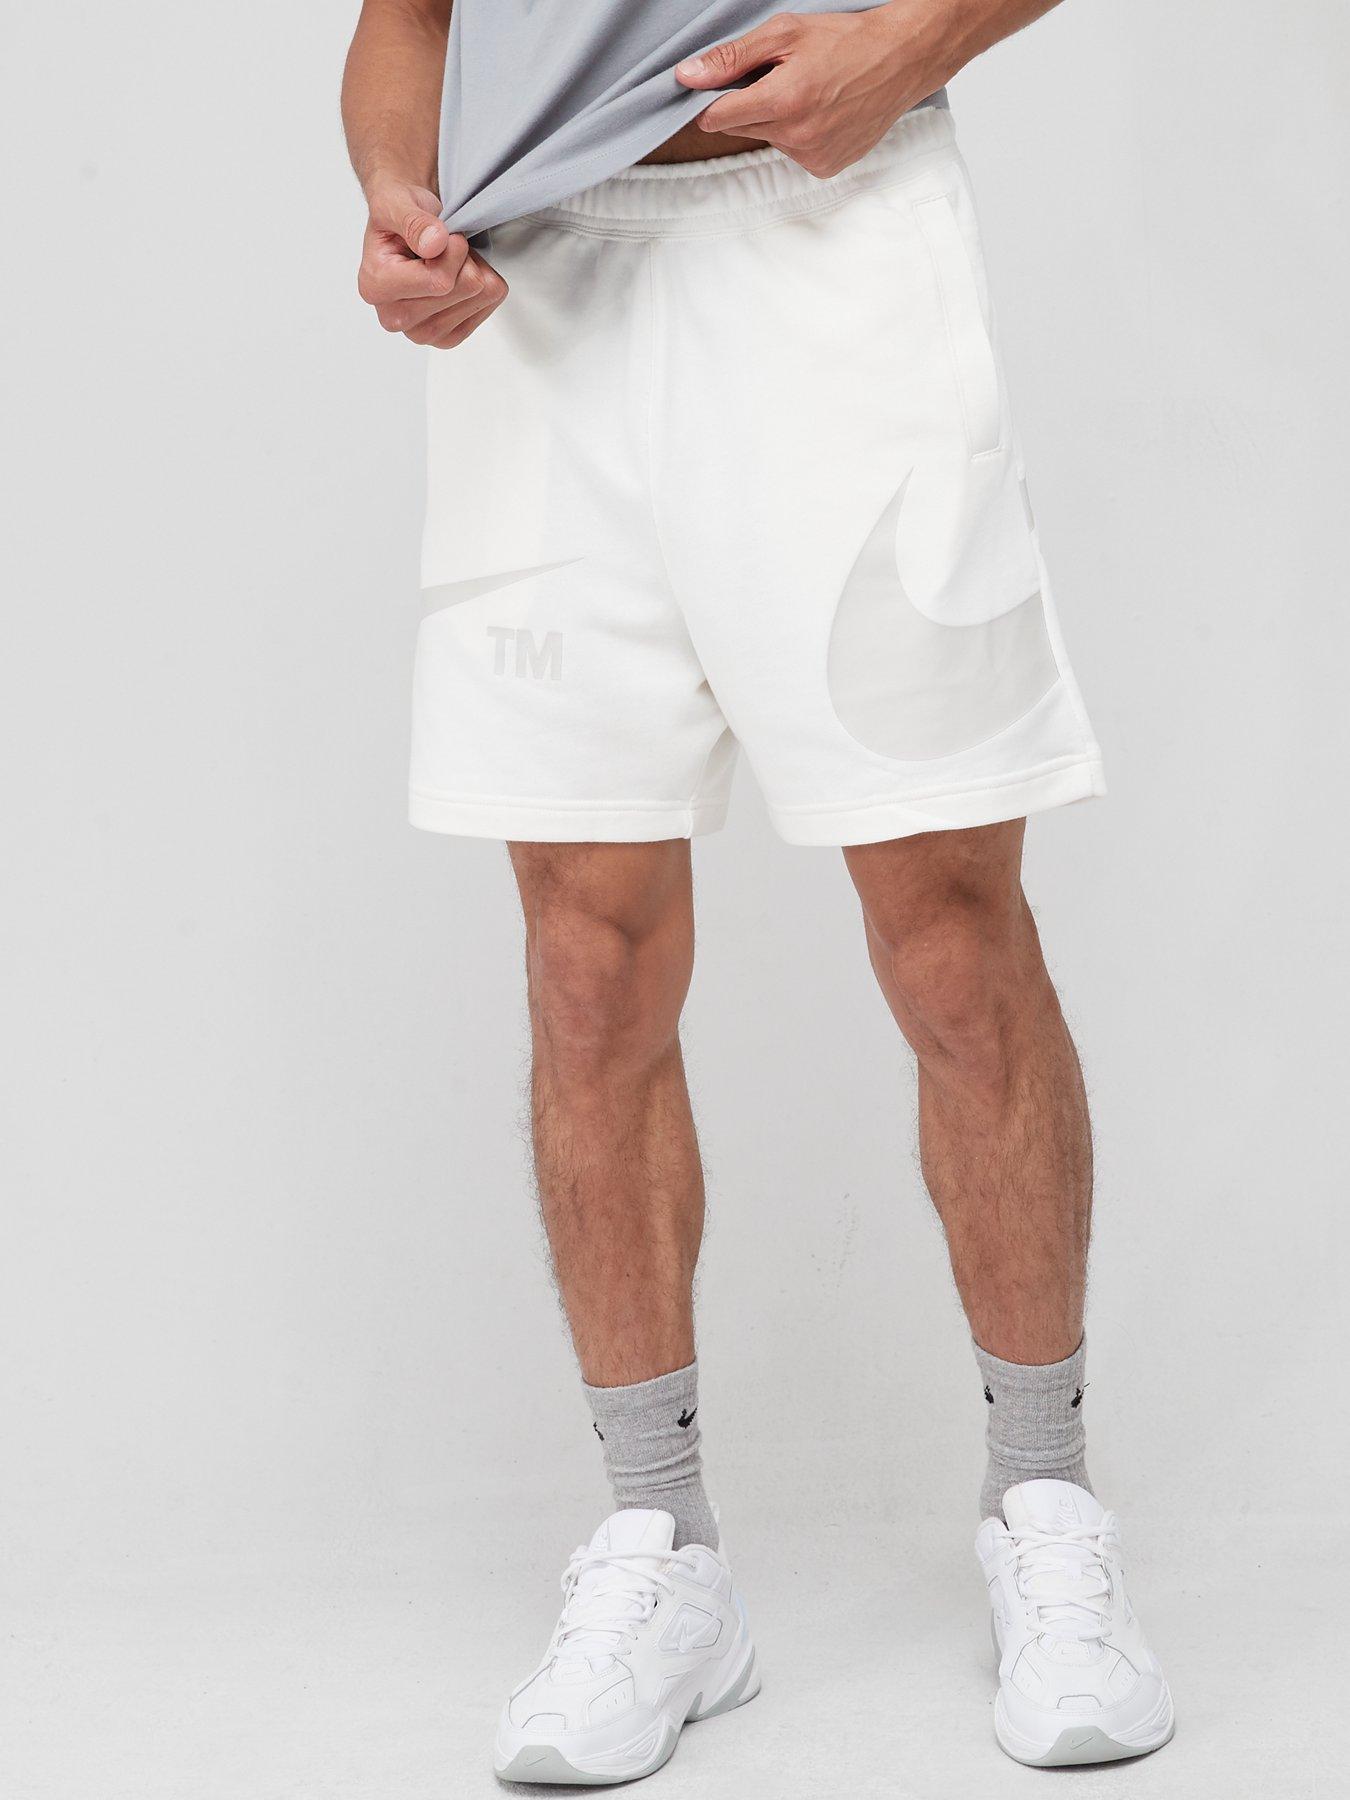  Swoosh Futura Shorts - Light Grey